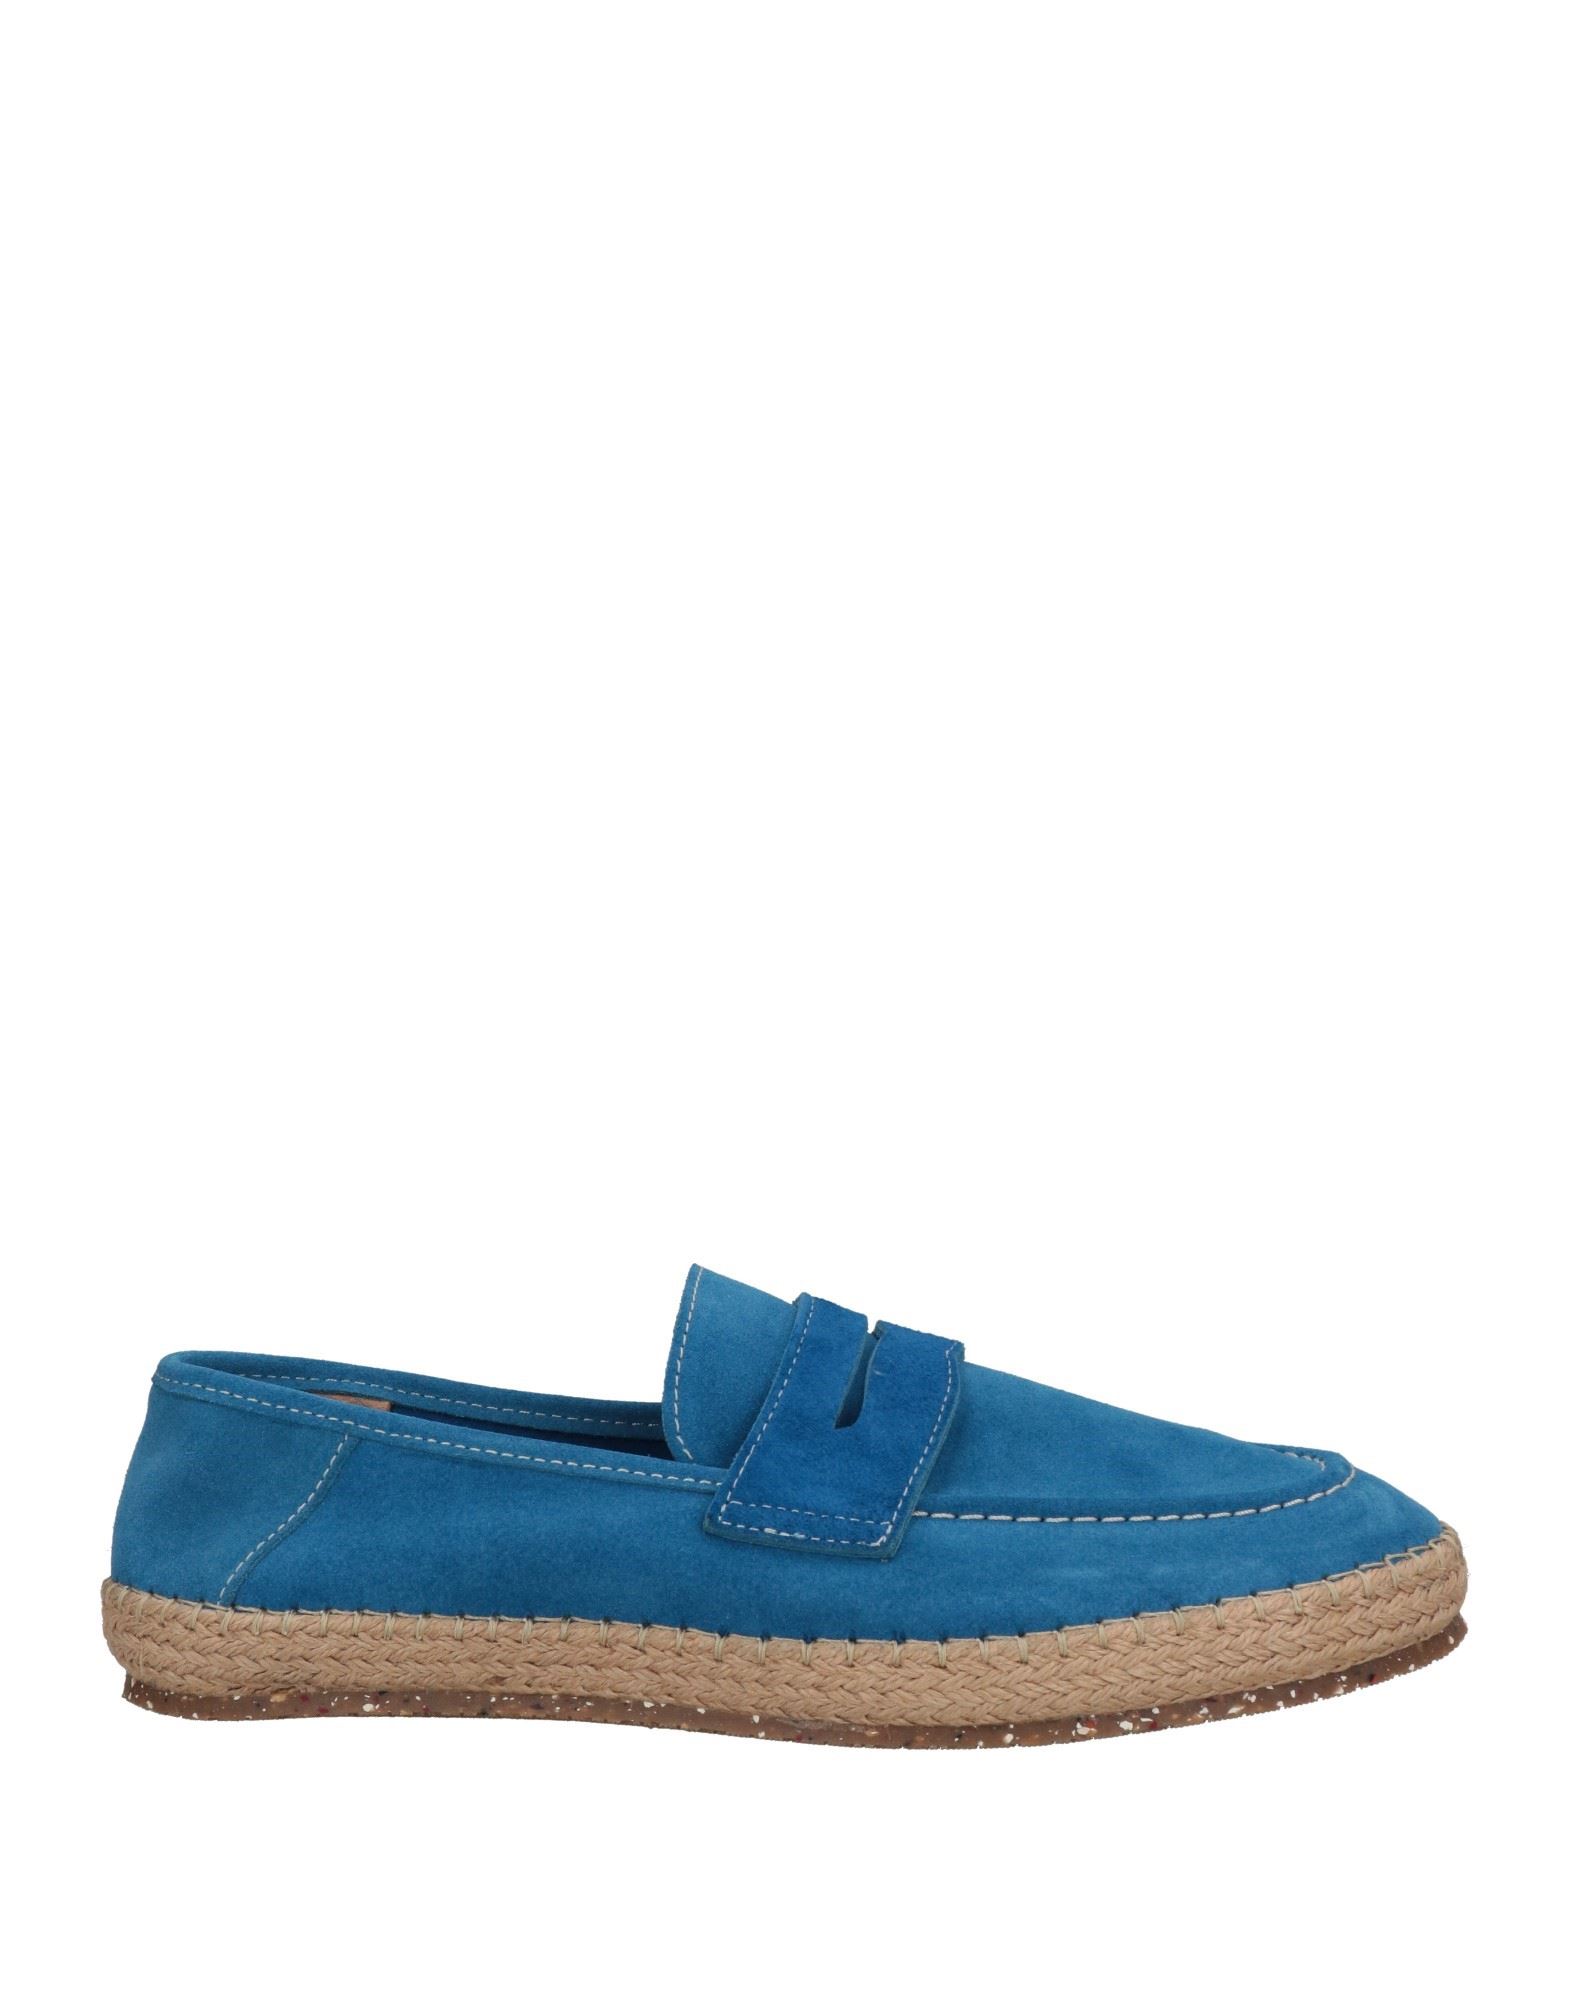 Shop Brimarts Man Espadrilles Bright Blue Size 6 Soft Leather